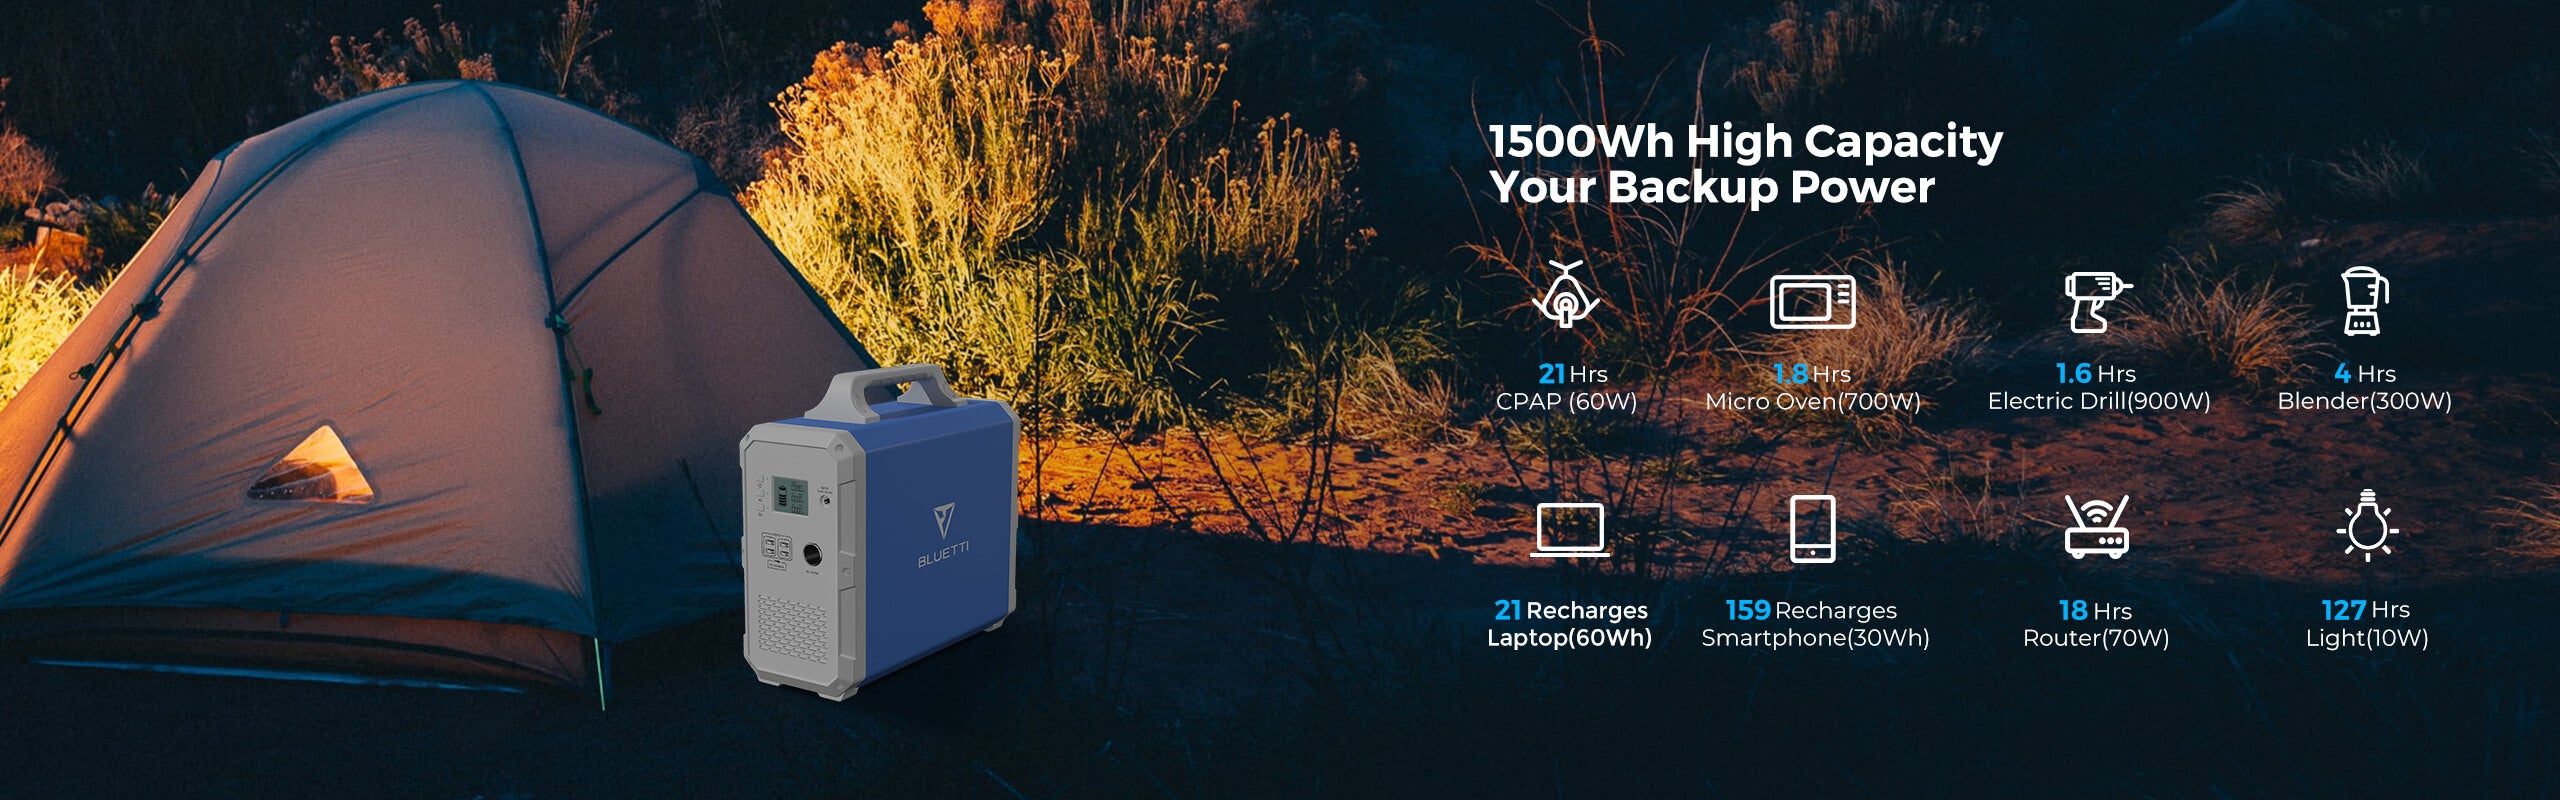 PowerOak Bluetti EB150 1500Wh Générateur Solaire Portable avec 2 Pièces  Panneaux Solaires 120W Groupe Electrogene Solaire avec Prises AC/DC/USB et  Batterie au Lithium pour Camping Camping-car - Boutique en ligne 100%  fiable.